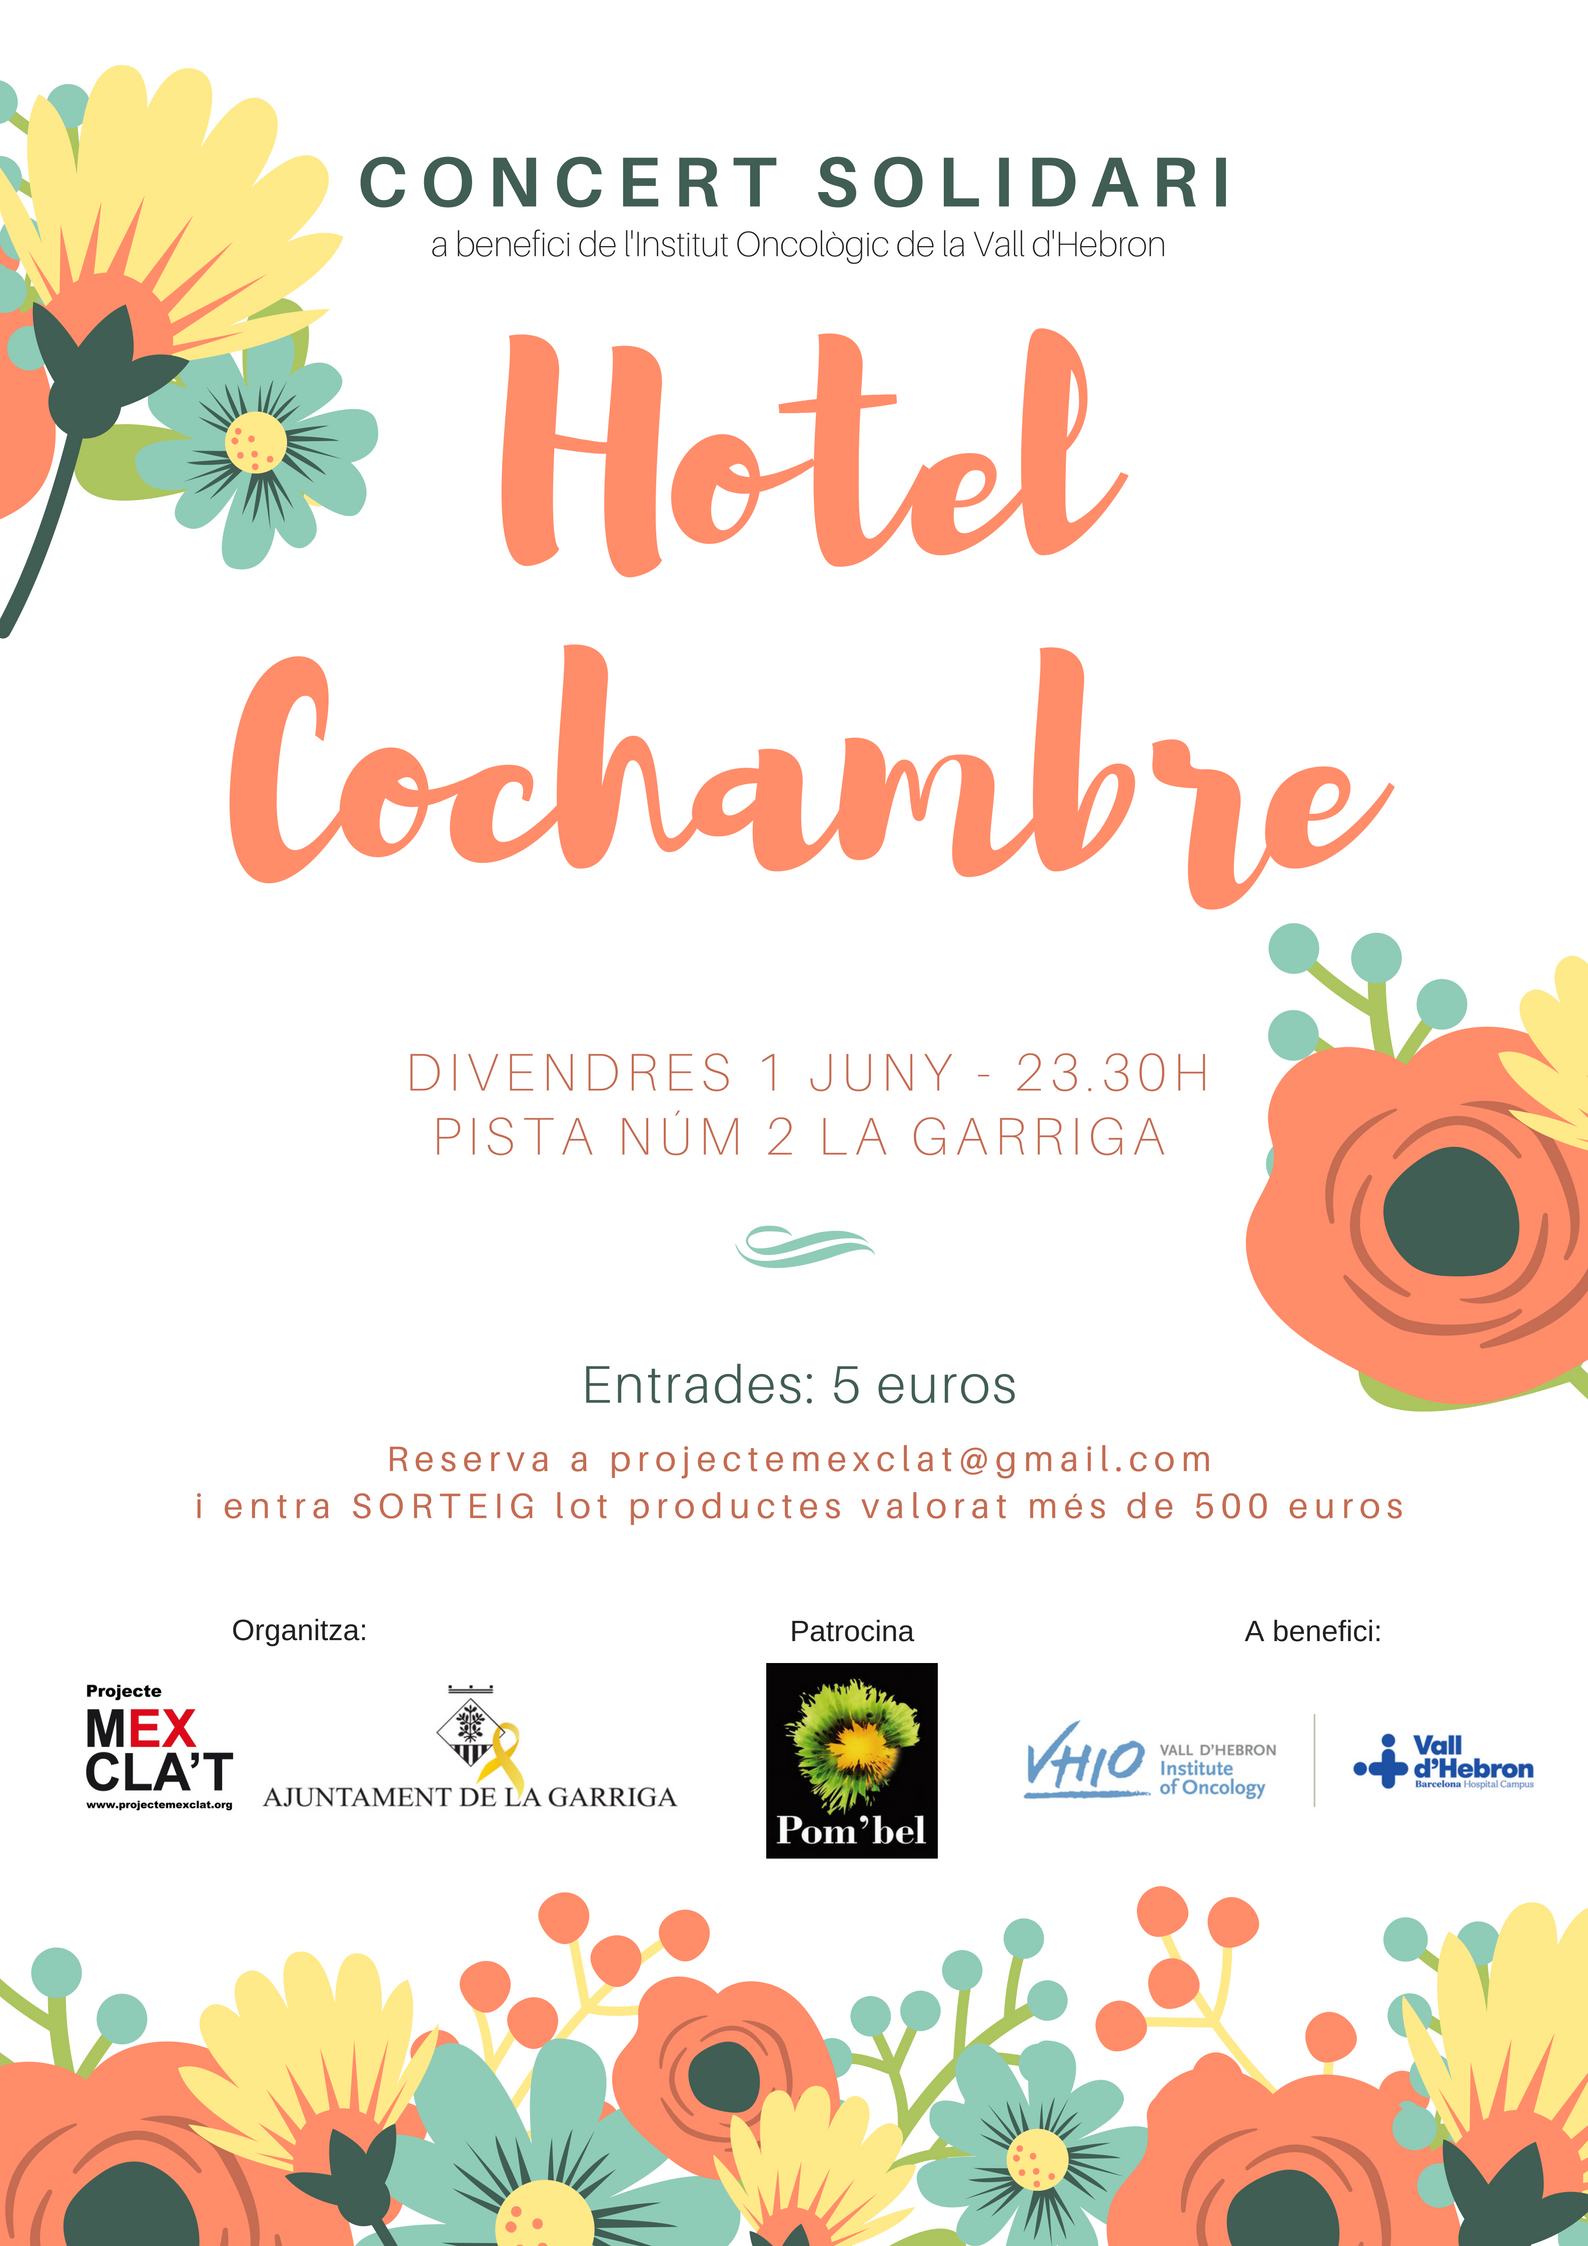 Concert solidari d'Hotel Cochambre